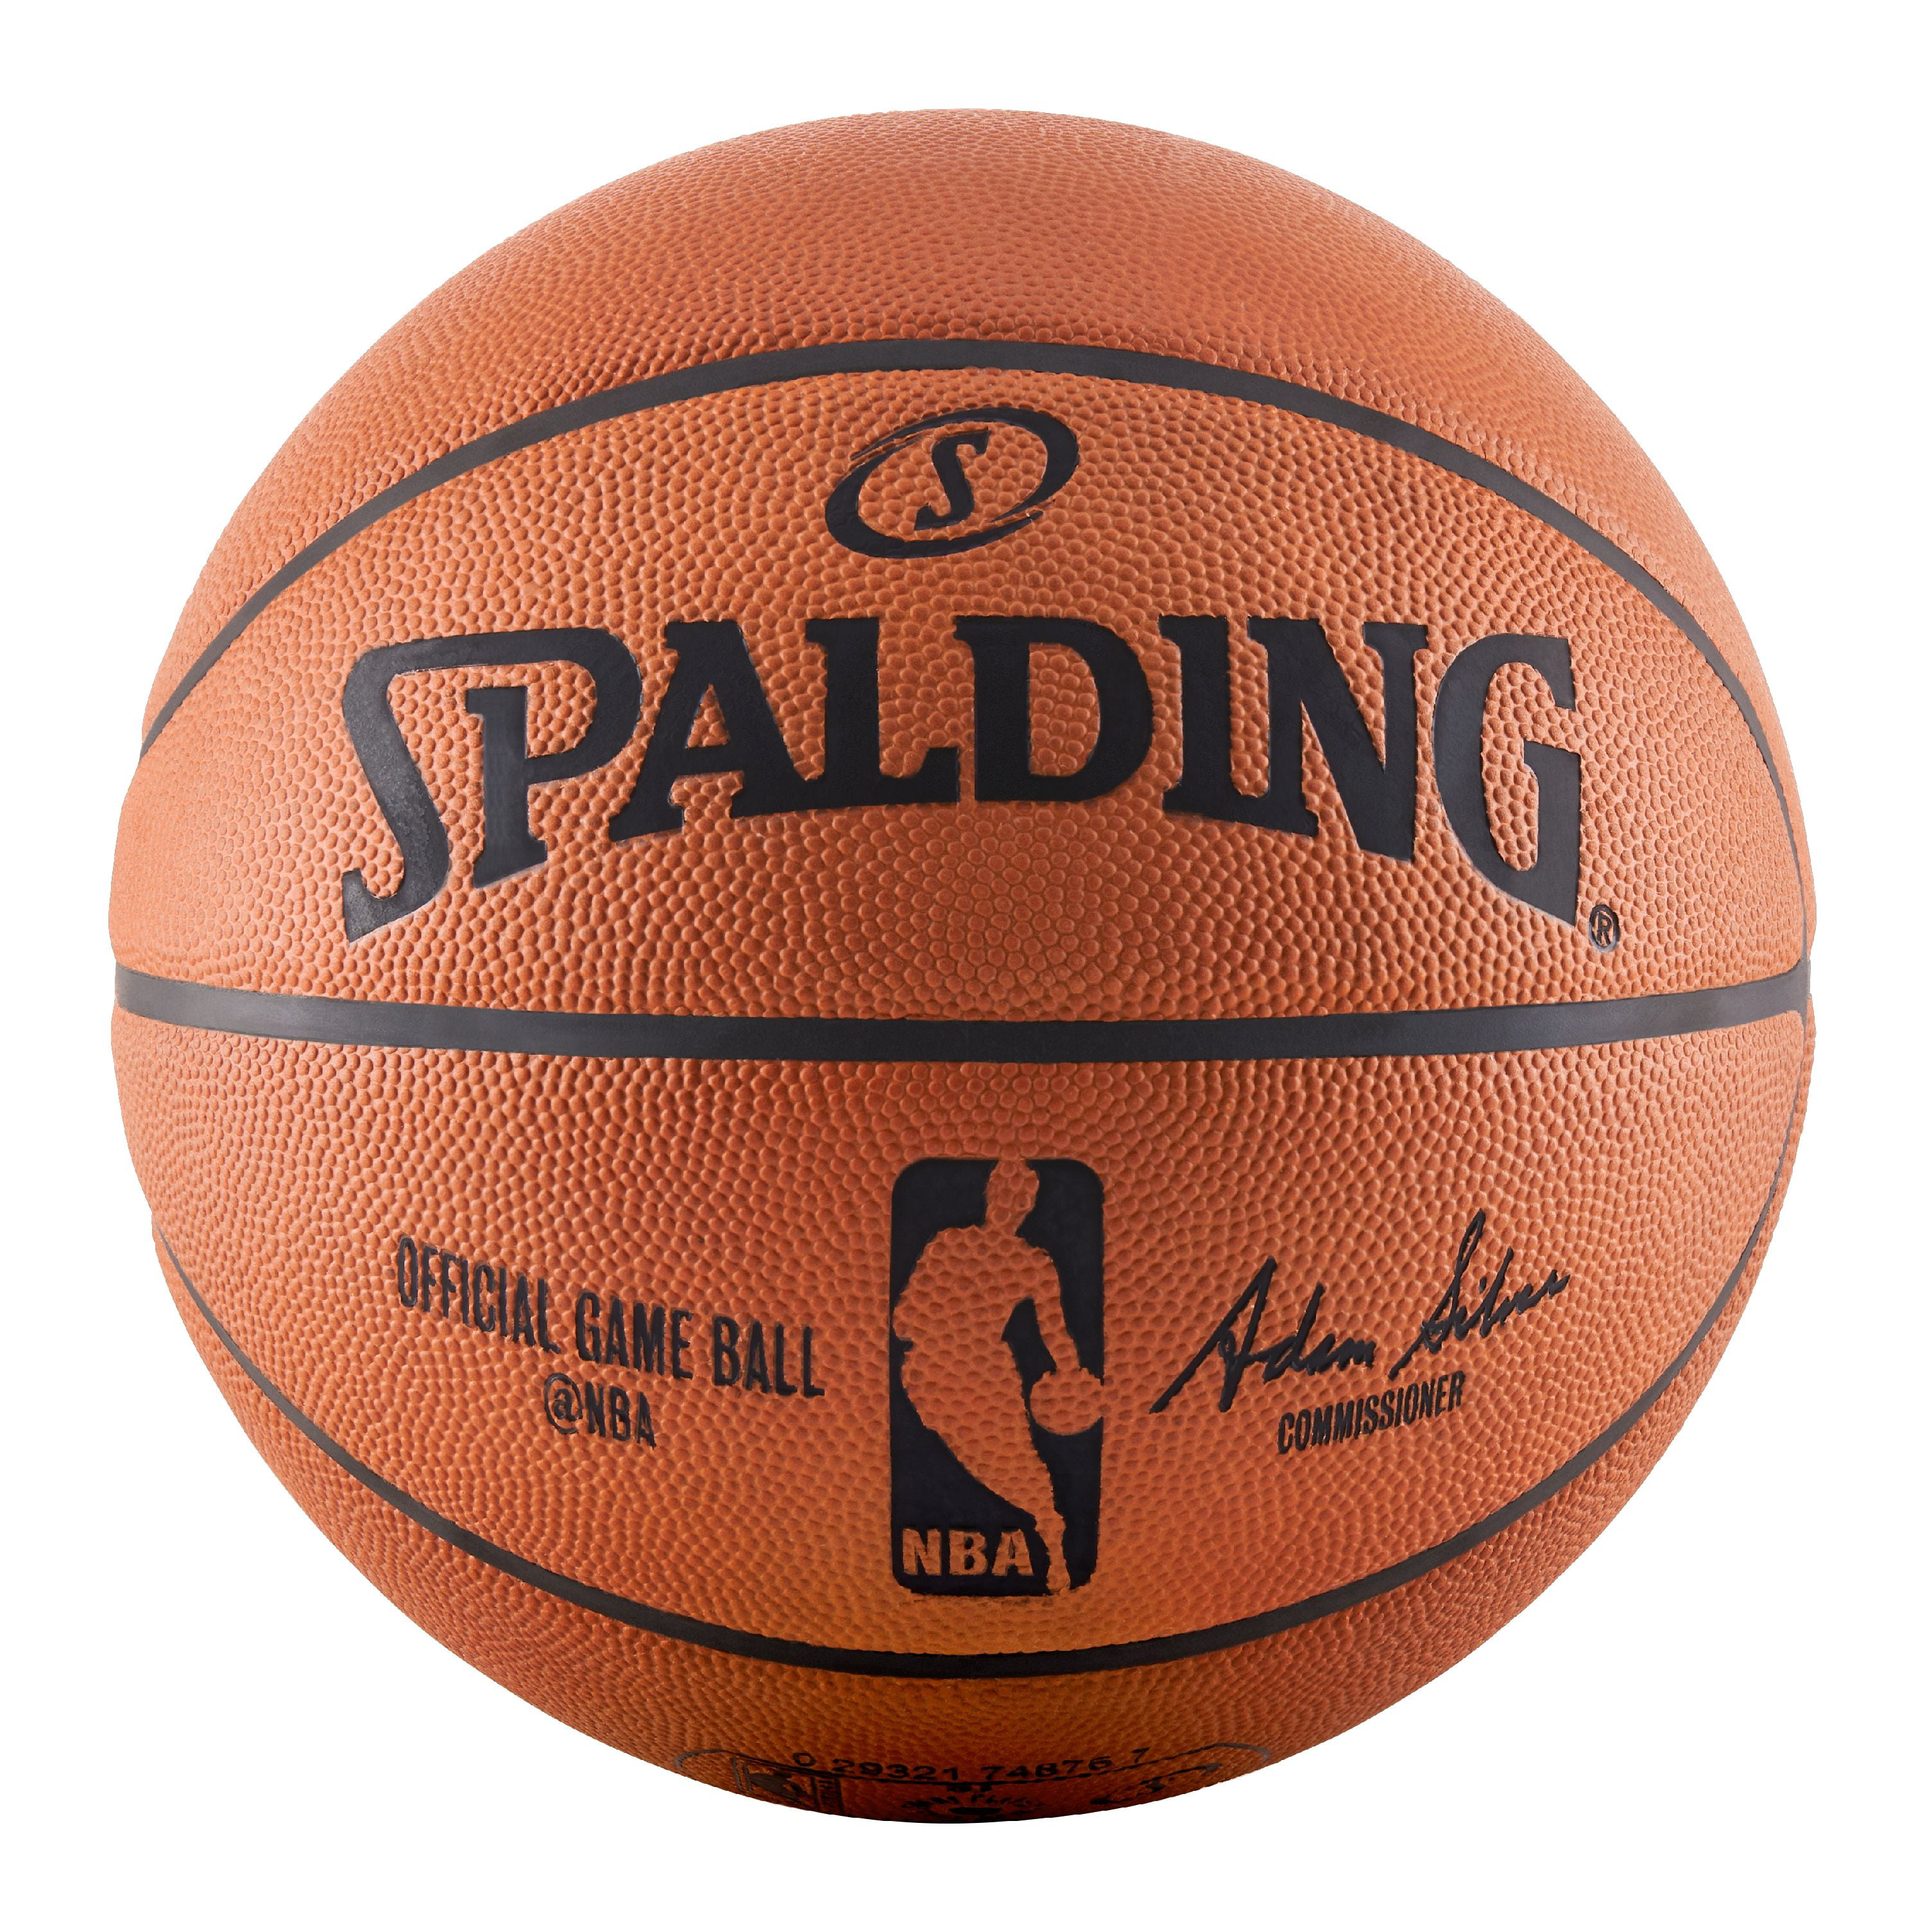 Баскетбольные мячи для детей. Баскетбольный мяч Spalding 7 Gold Indoor Outdoor. Мяч Spalding TF-250 (размер 7). Баскетбольный мяч Spalding TF-150, Р. 7. Мяч Spalding TF-250 (размер 6).